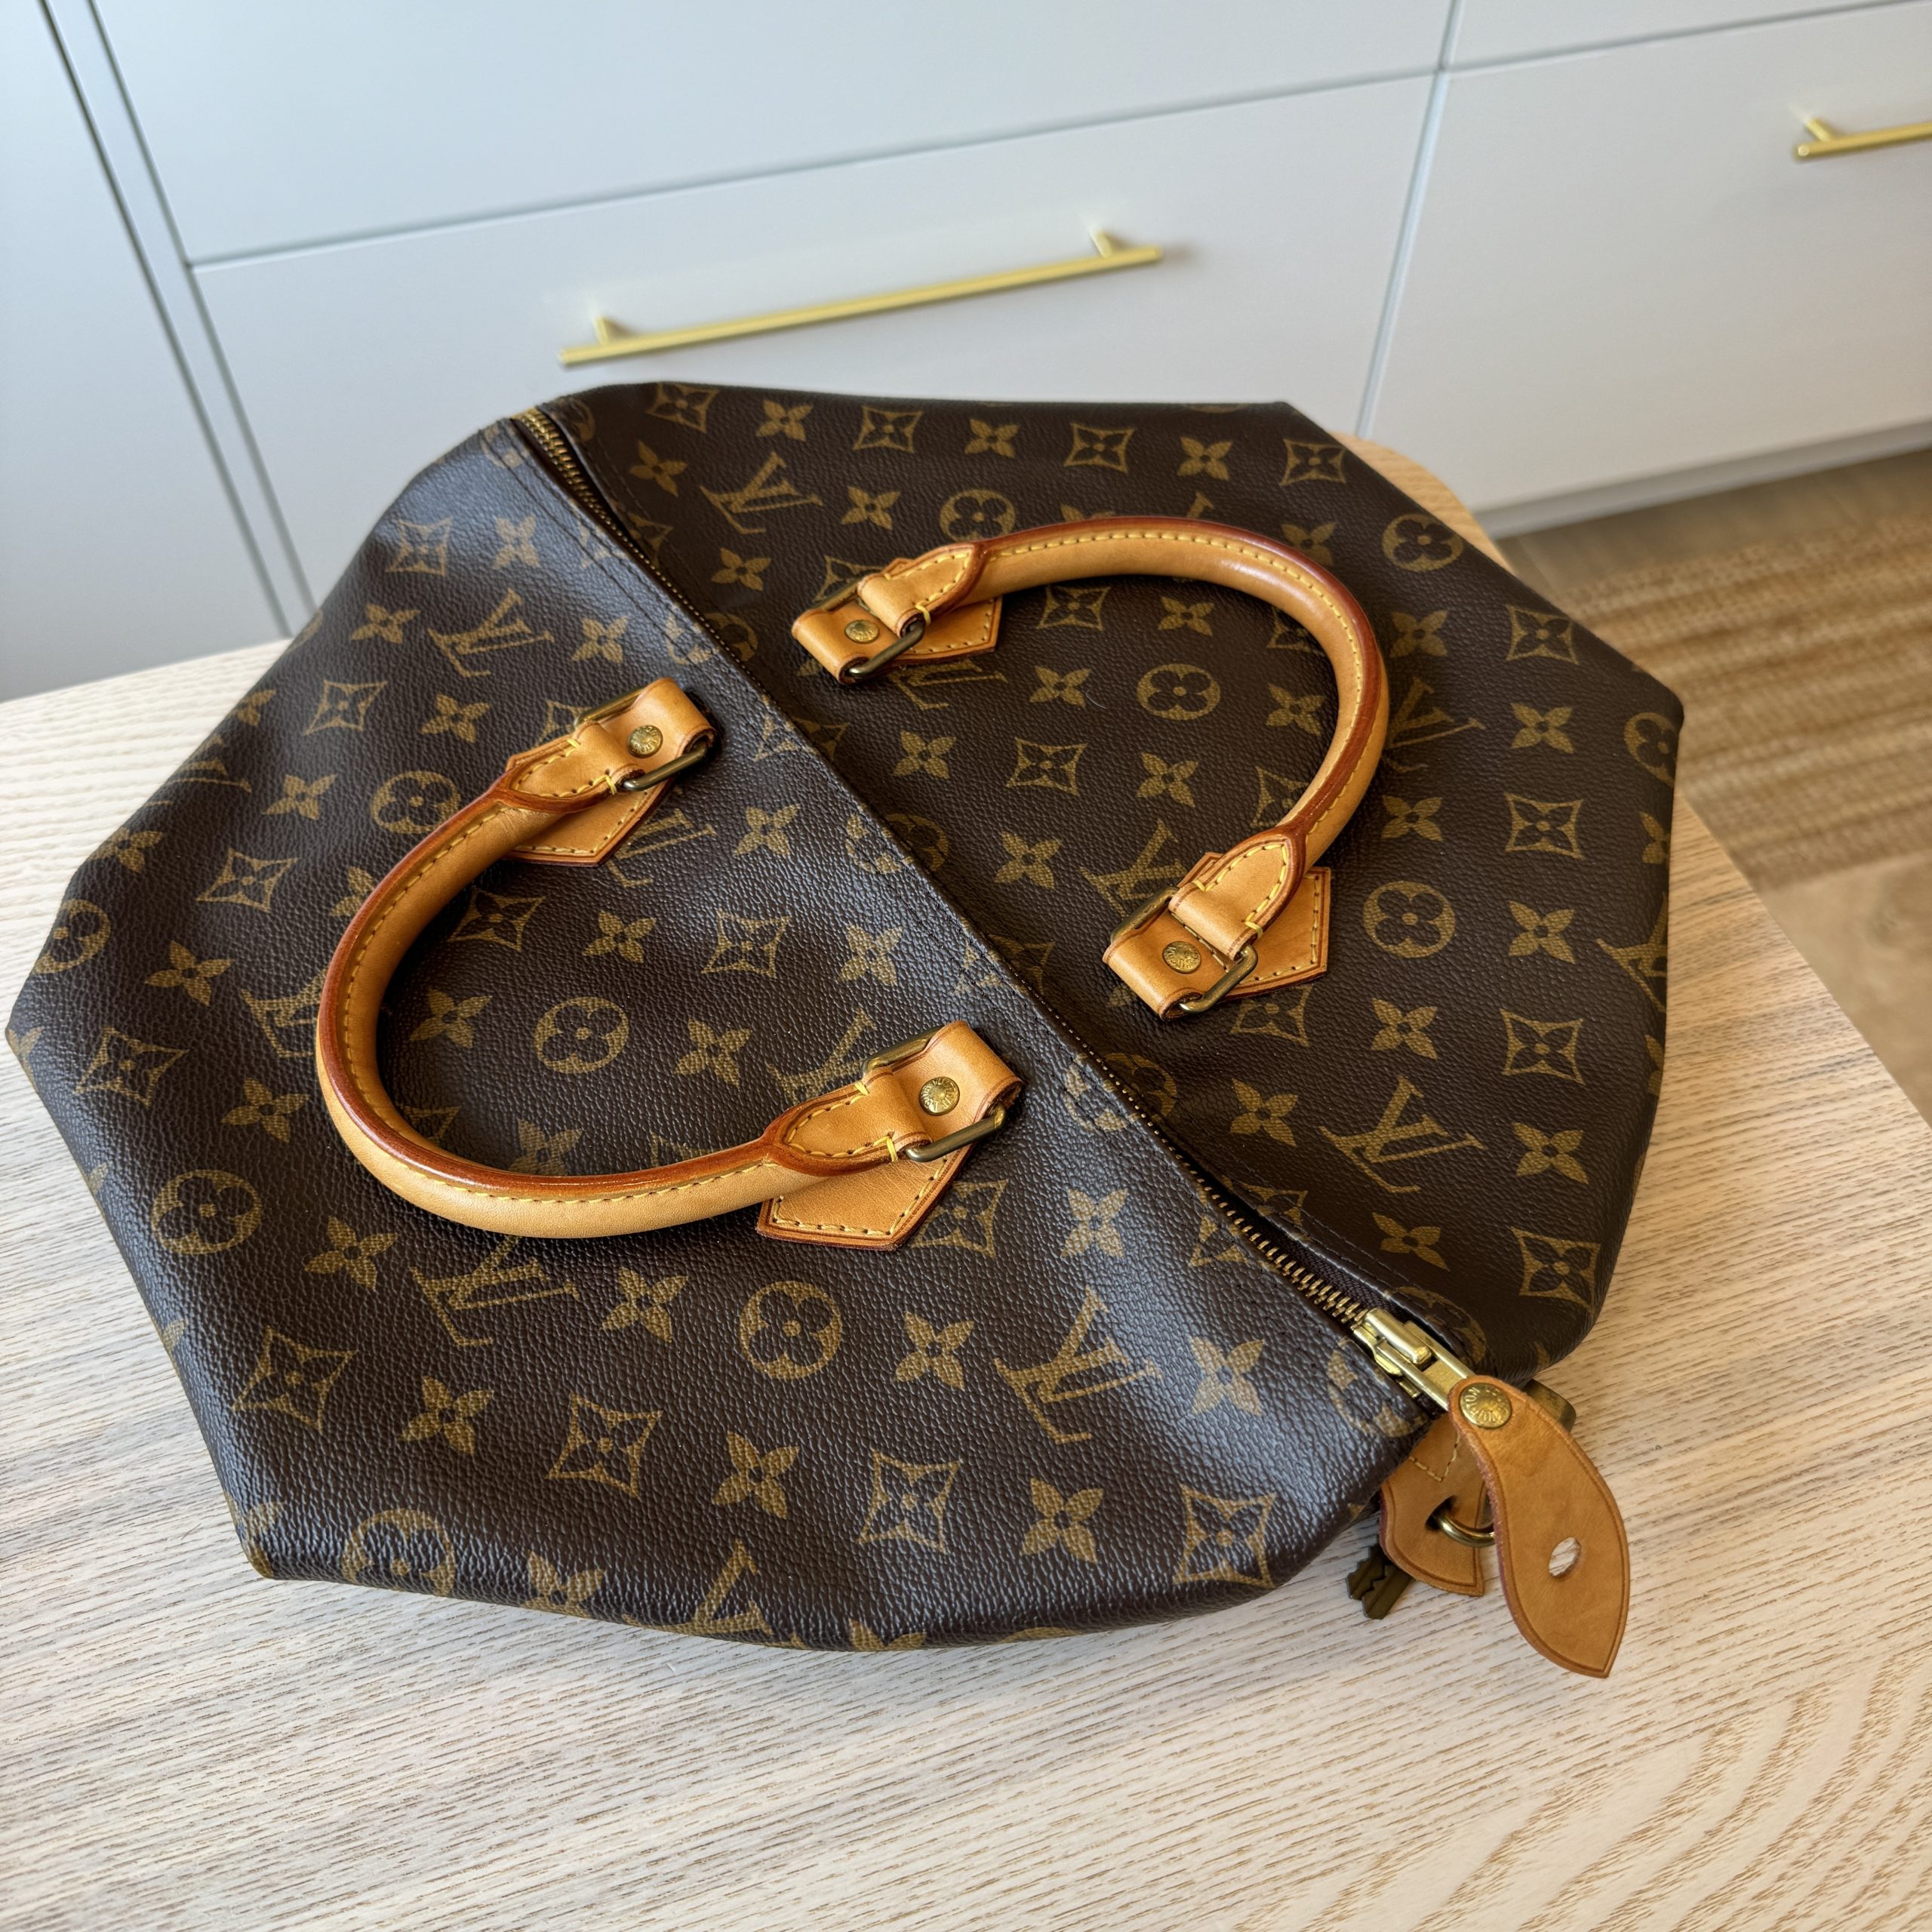 Louis Vuitton Monogrammed Speedy Handbag Size 35